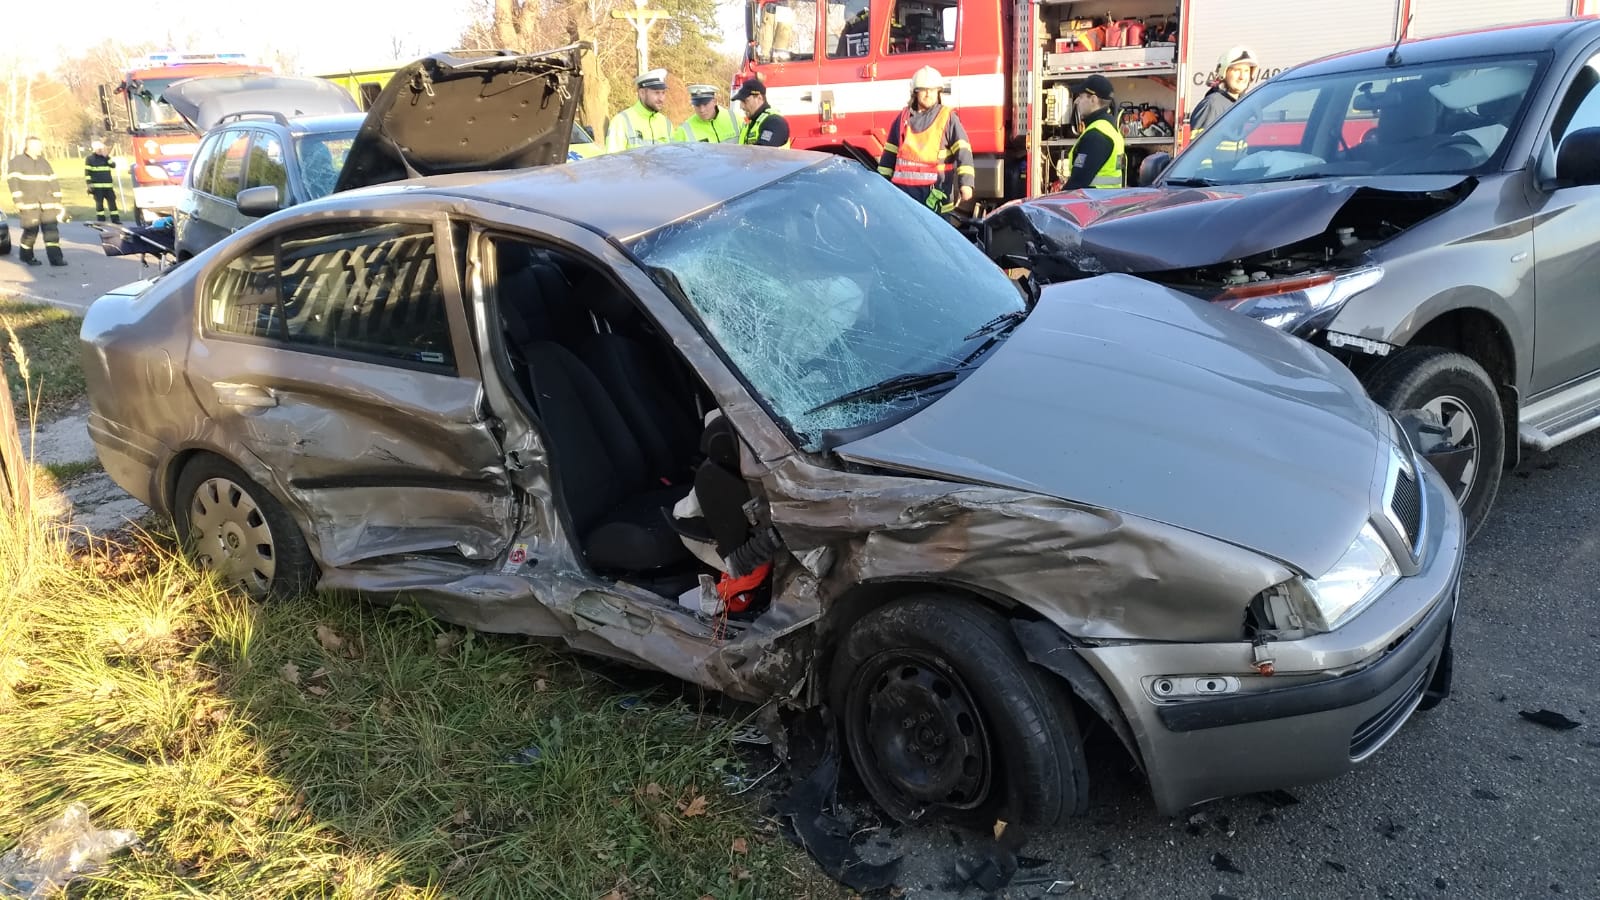 Dopravní nehoda 3 OA, Sudoměřice u Bechyně - 16. 11. 2018 (2).jpg